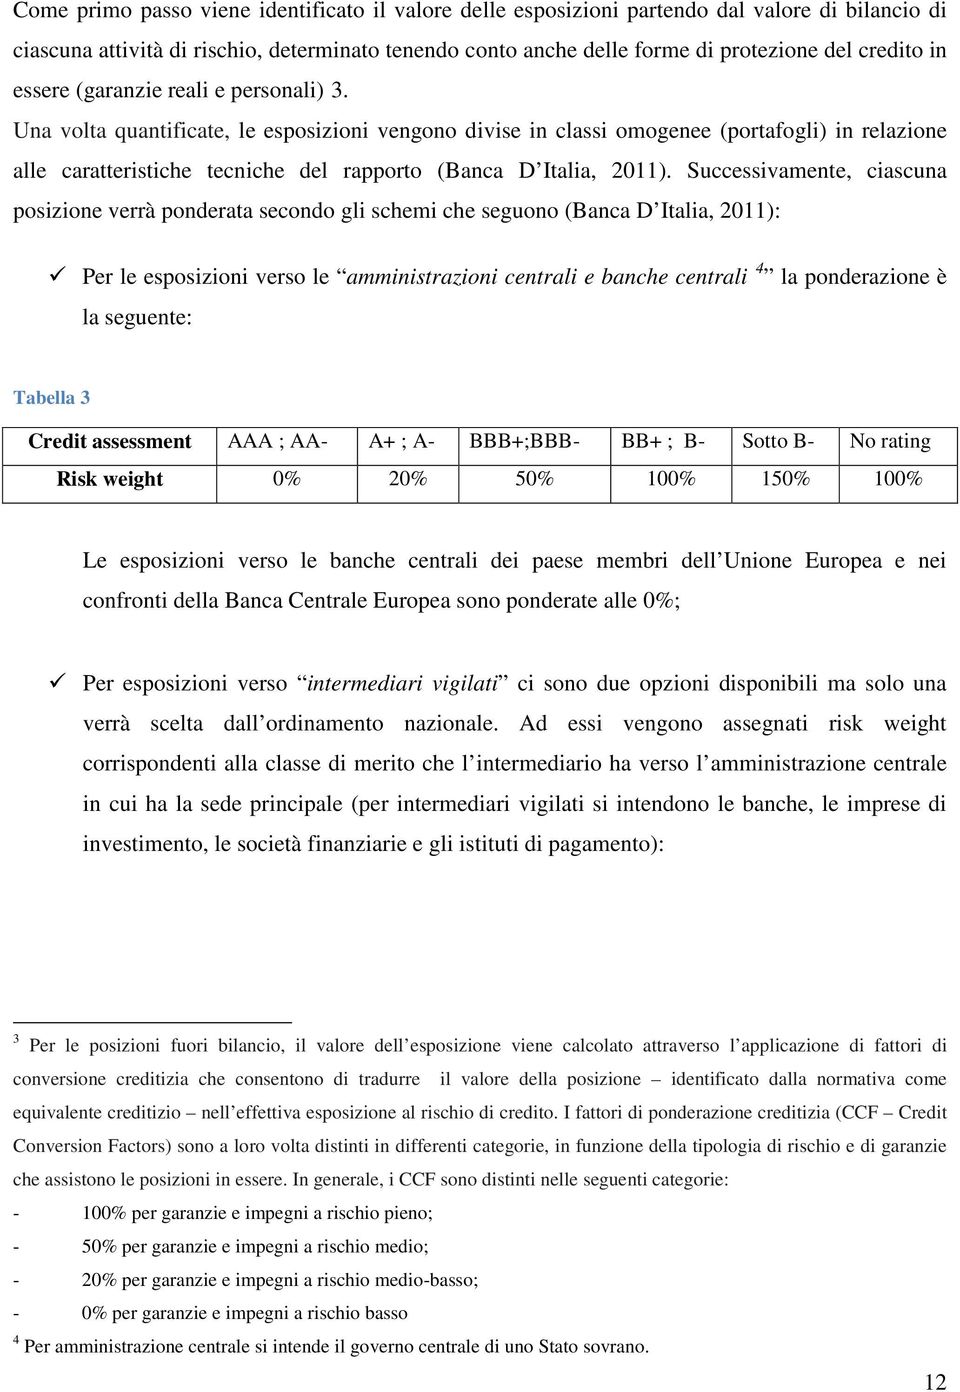 Una volta quantificate, le esposizioni vengono divise in classi omogenee (portafogli) in relazione alle caratteristiche tecniche del rapporto (Banca D Italia, 2011).